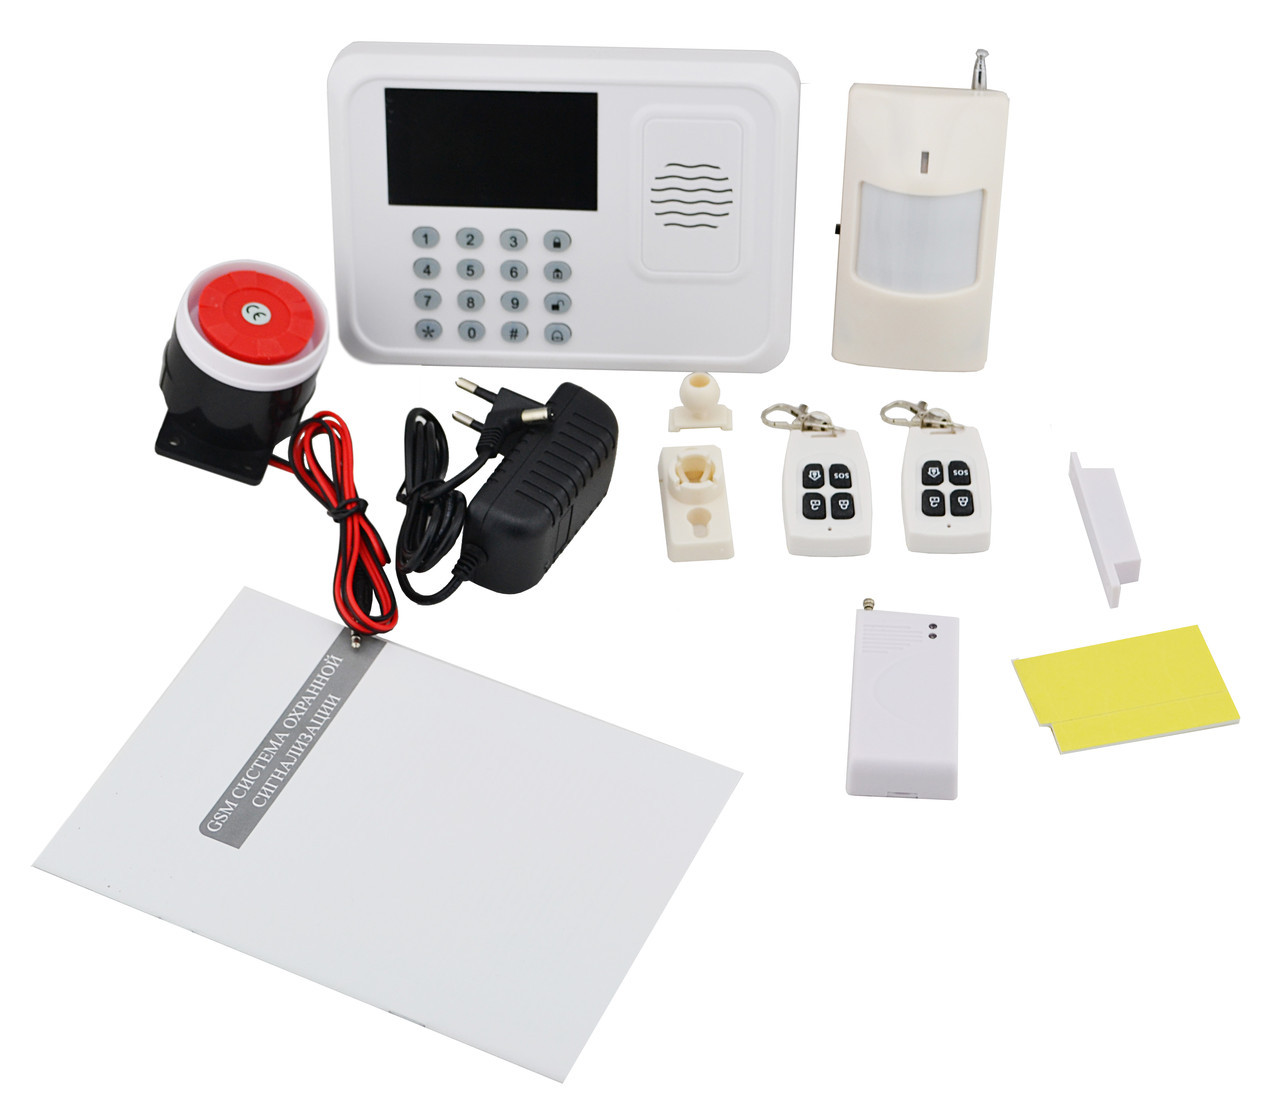 Аларм цена. GSM система охранной сигнализации g200. Охранная сигнализация g50r. DVG-p12 GSM Alarm Kits комплект GSM сигнализация. DVG-p13 (GSM Alarm Kits комплект) GSM сигнализация.